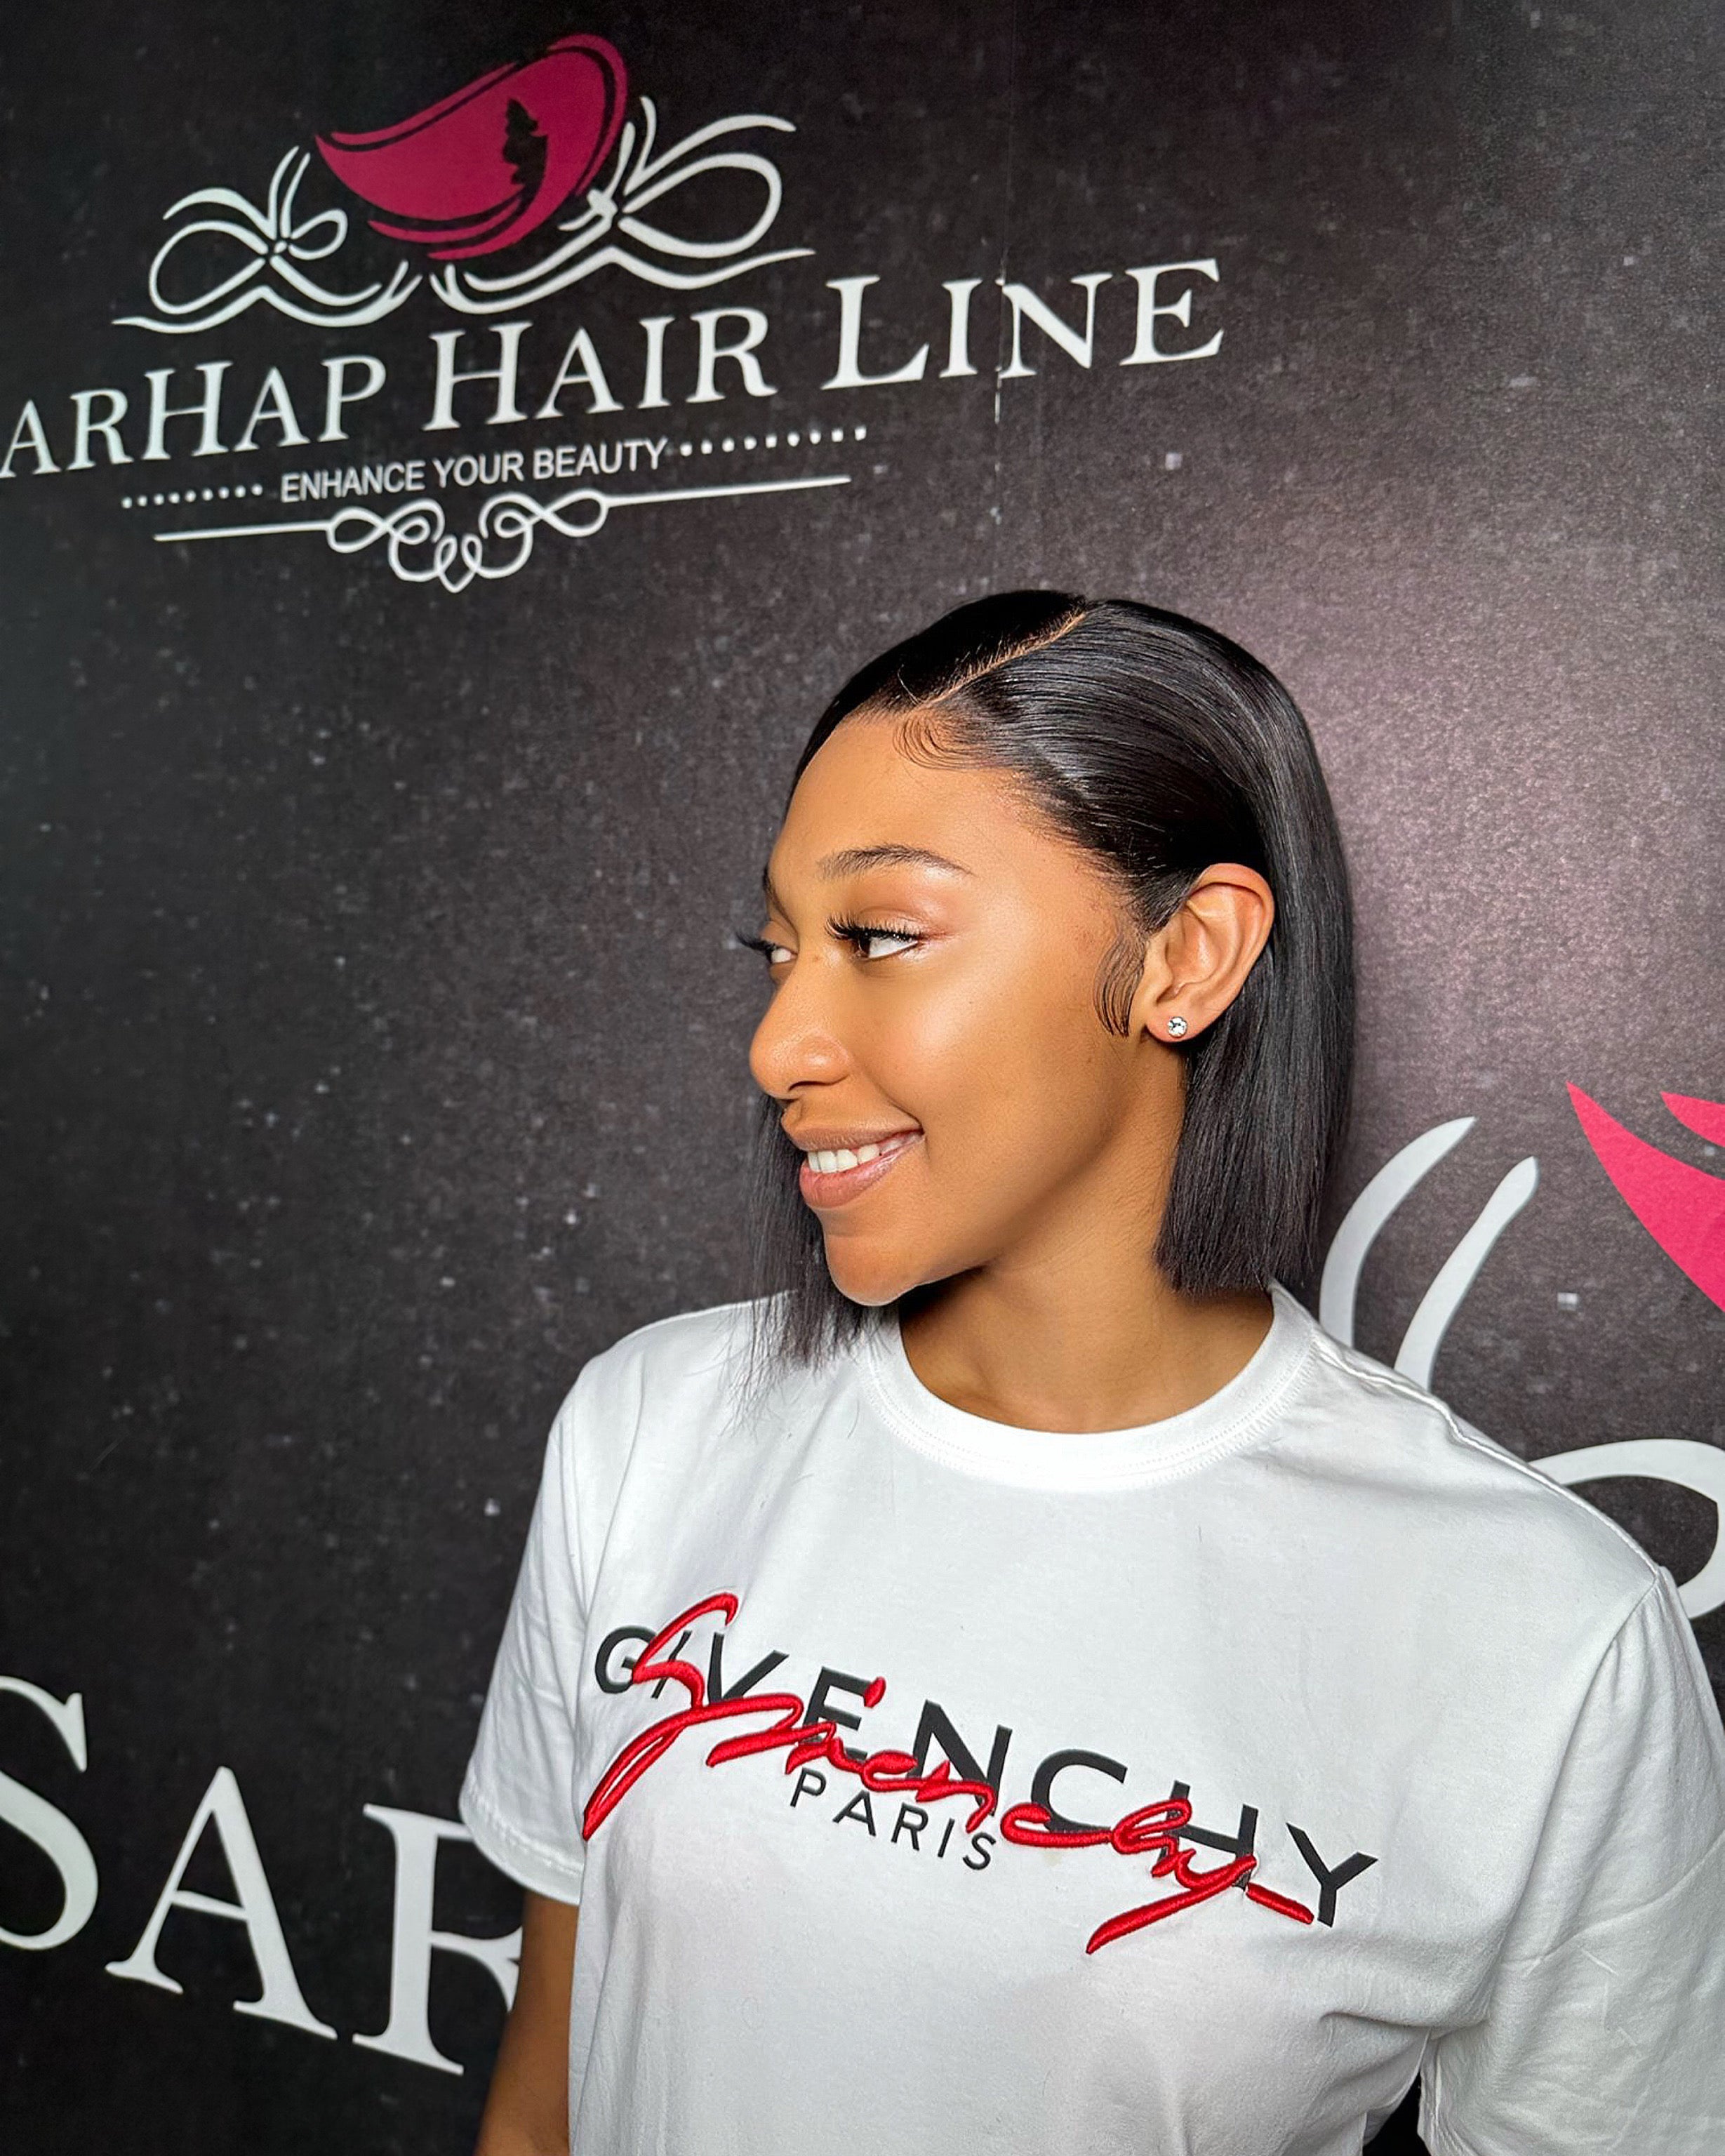 Sarhap Hair Line